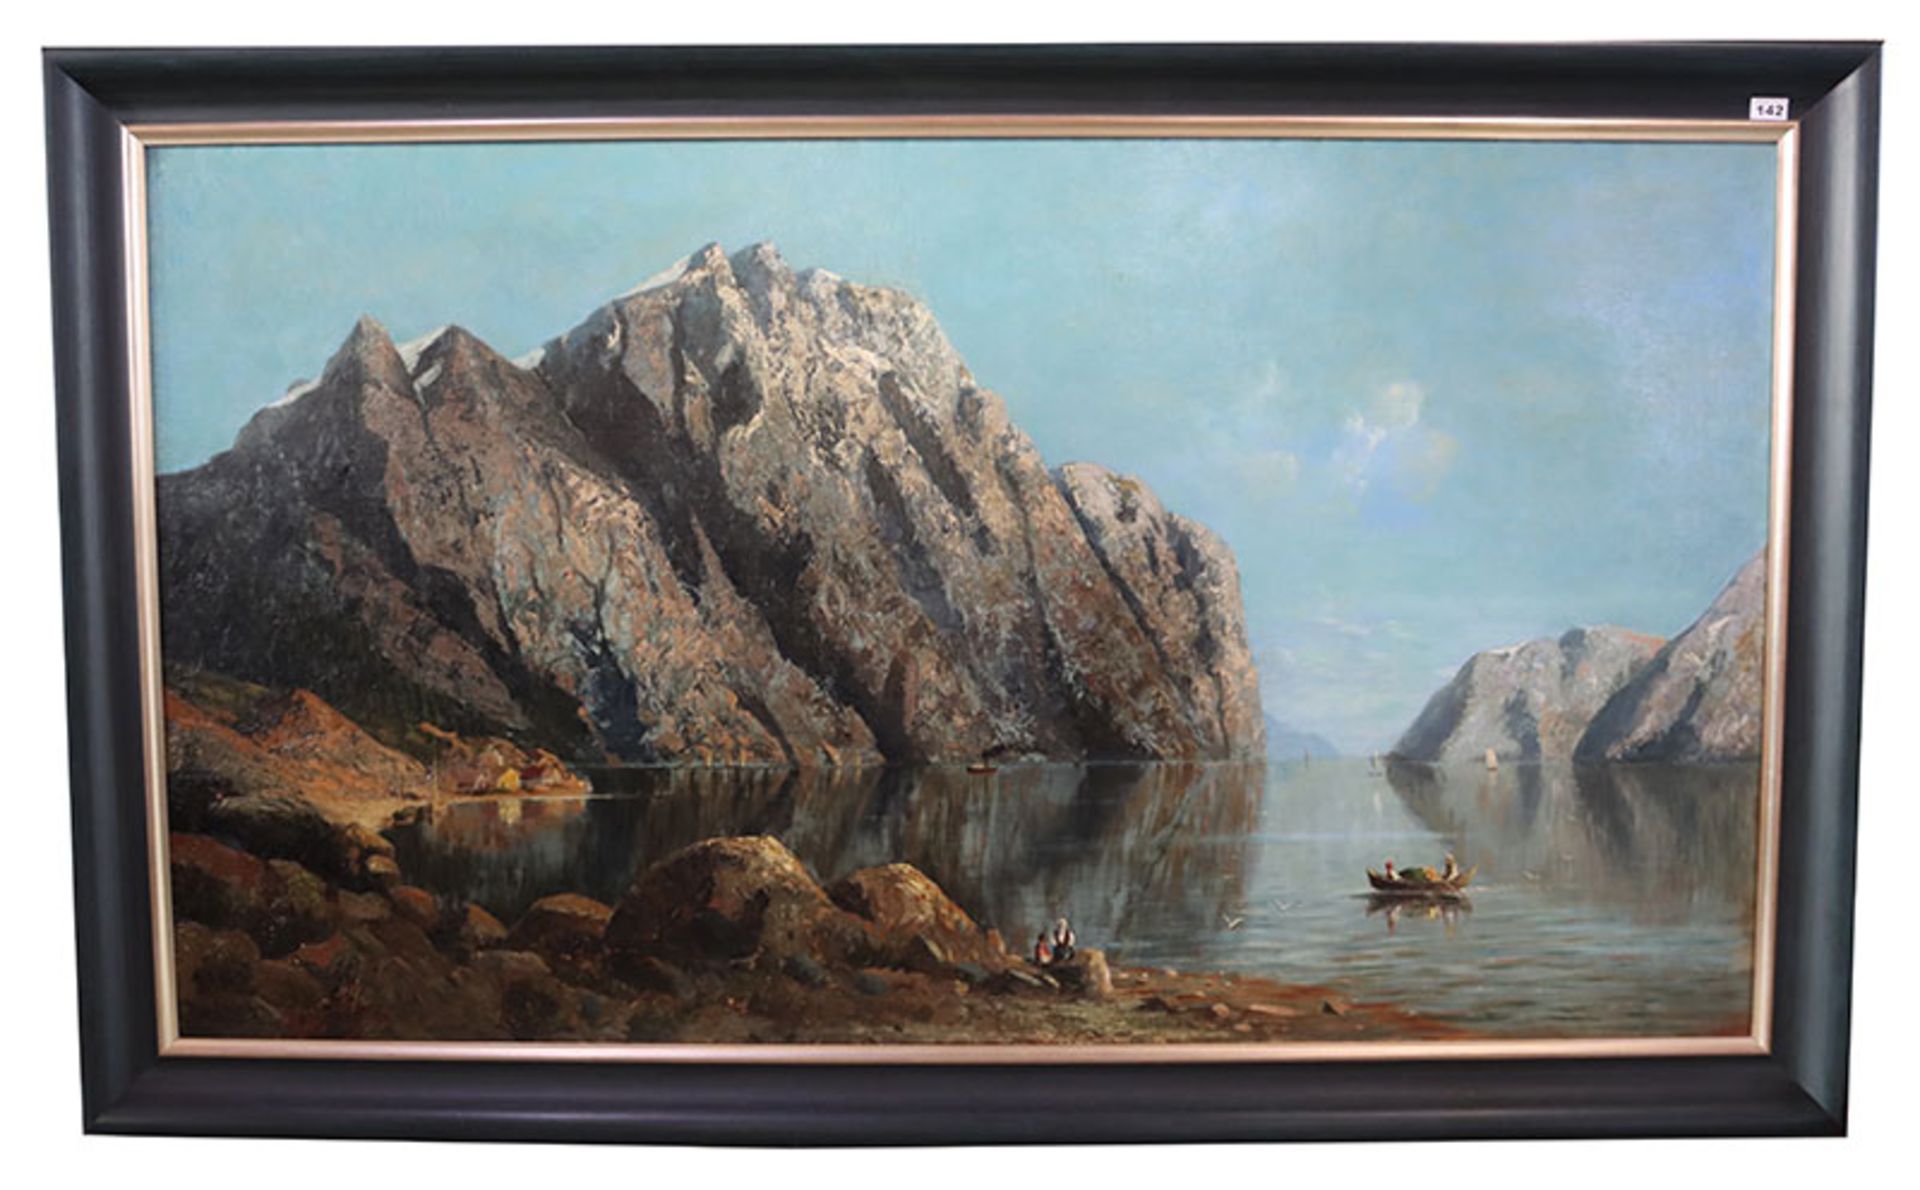 Gemälde ÖL/LW 'Fjordlandschaft', signiert Th. Fudg s. ? 85, LW hat kleine Farbablösungen, gerahmt,